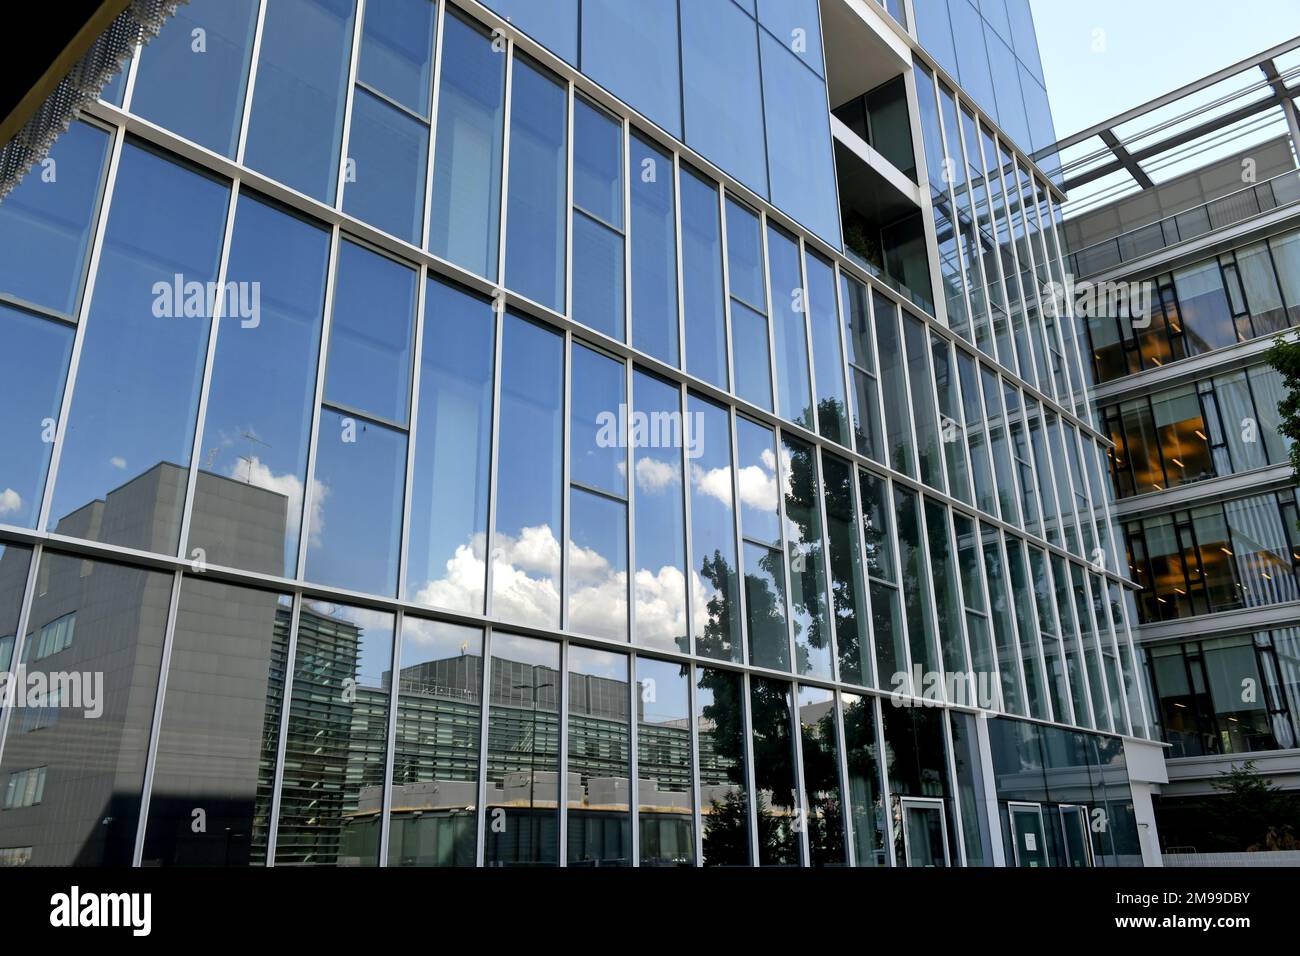 Moderno edificio in vetro per uffici del gruppo dei media finanziari Sole 24 ore, a Milano Foto Stock